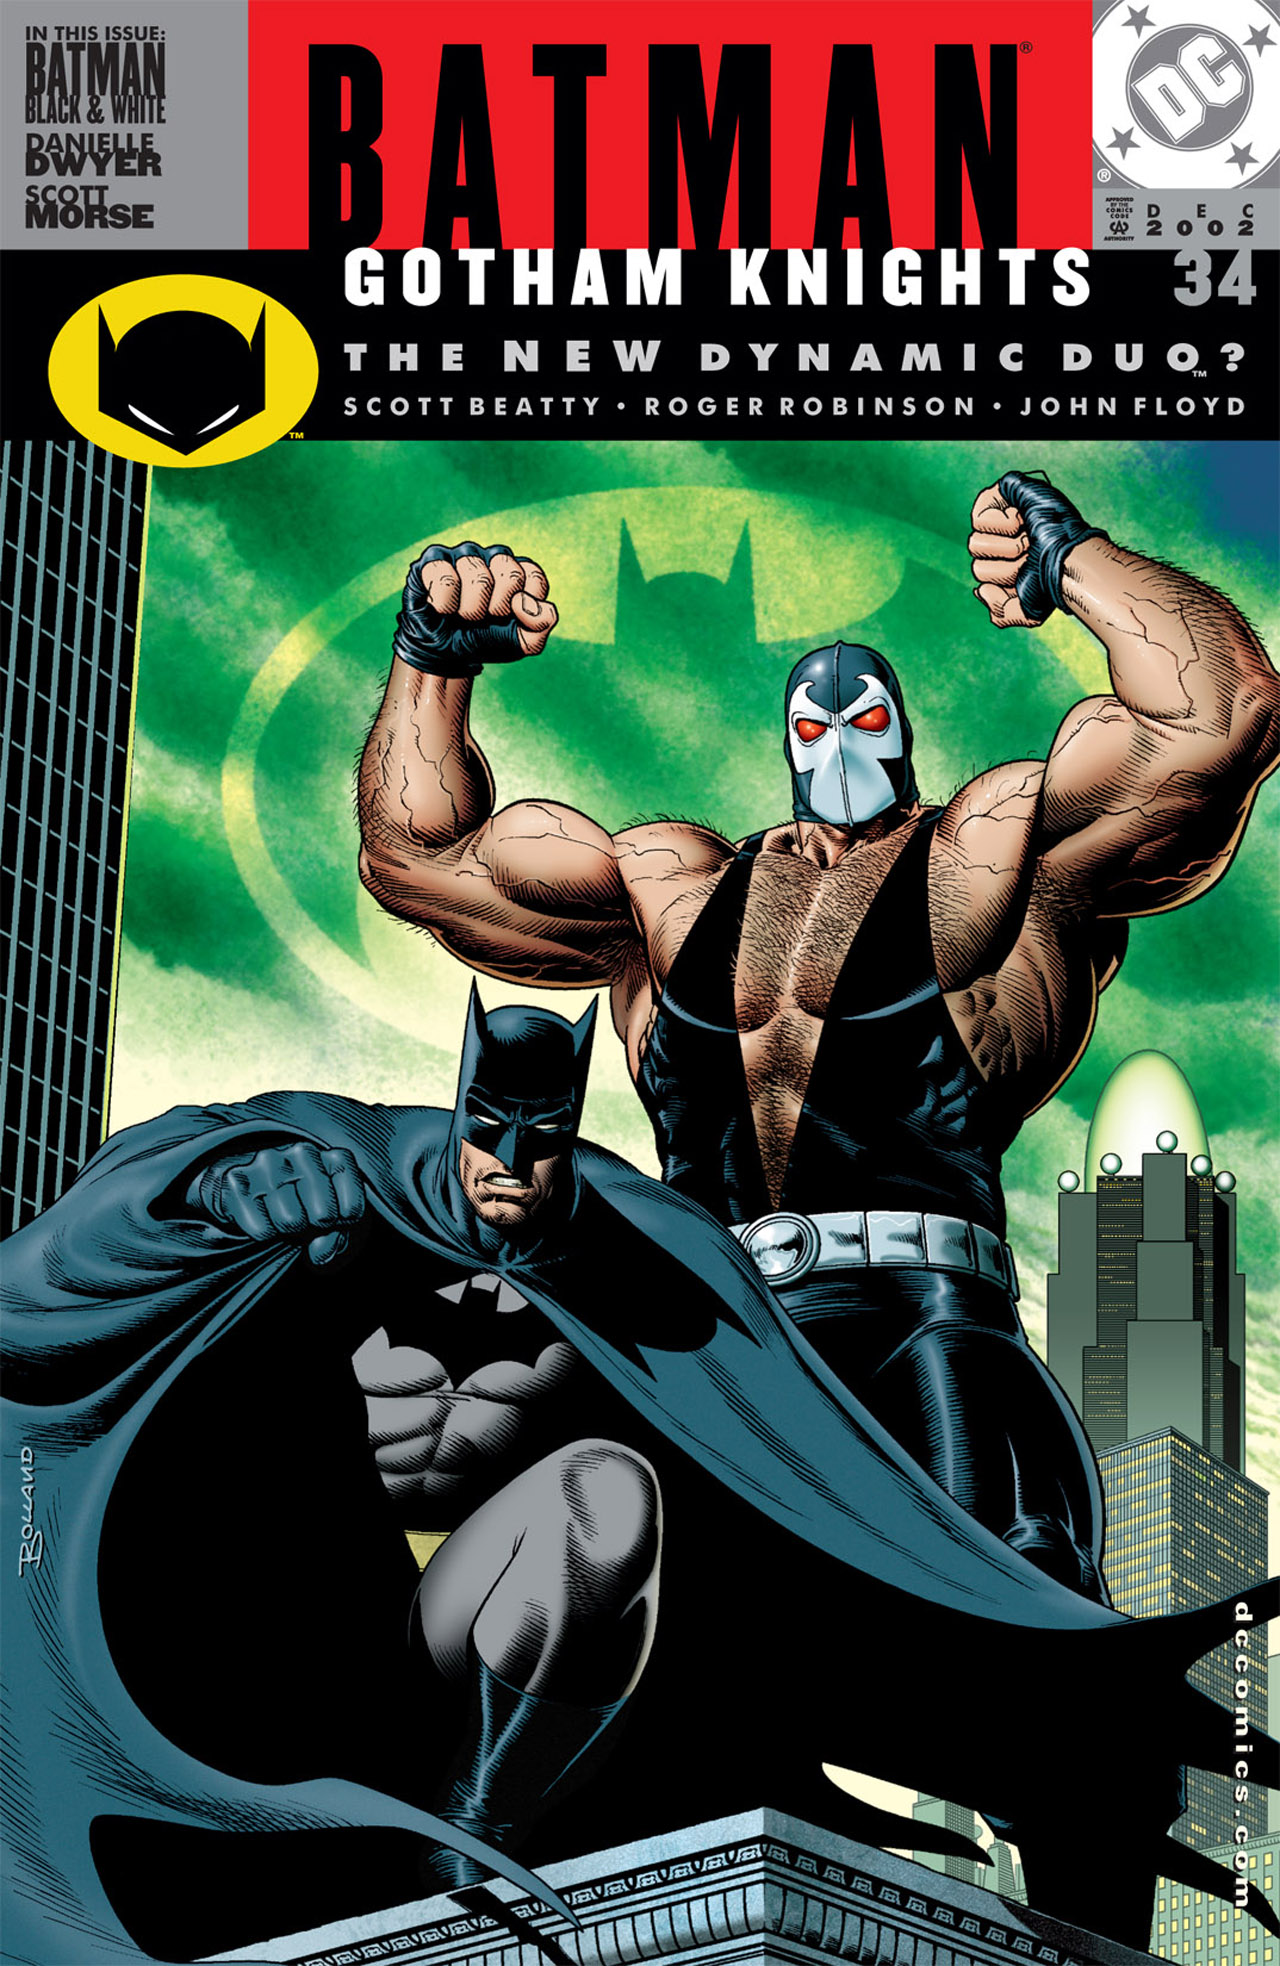 Batman Gotham Knights Issue 34 | Read Batman Gotham Knights Issue 34 comic  online in high quality. Read Full Comic online for free - Read comics online  in high quality .| READ COMIC ONLINE